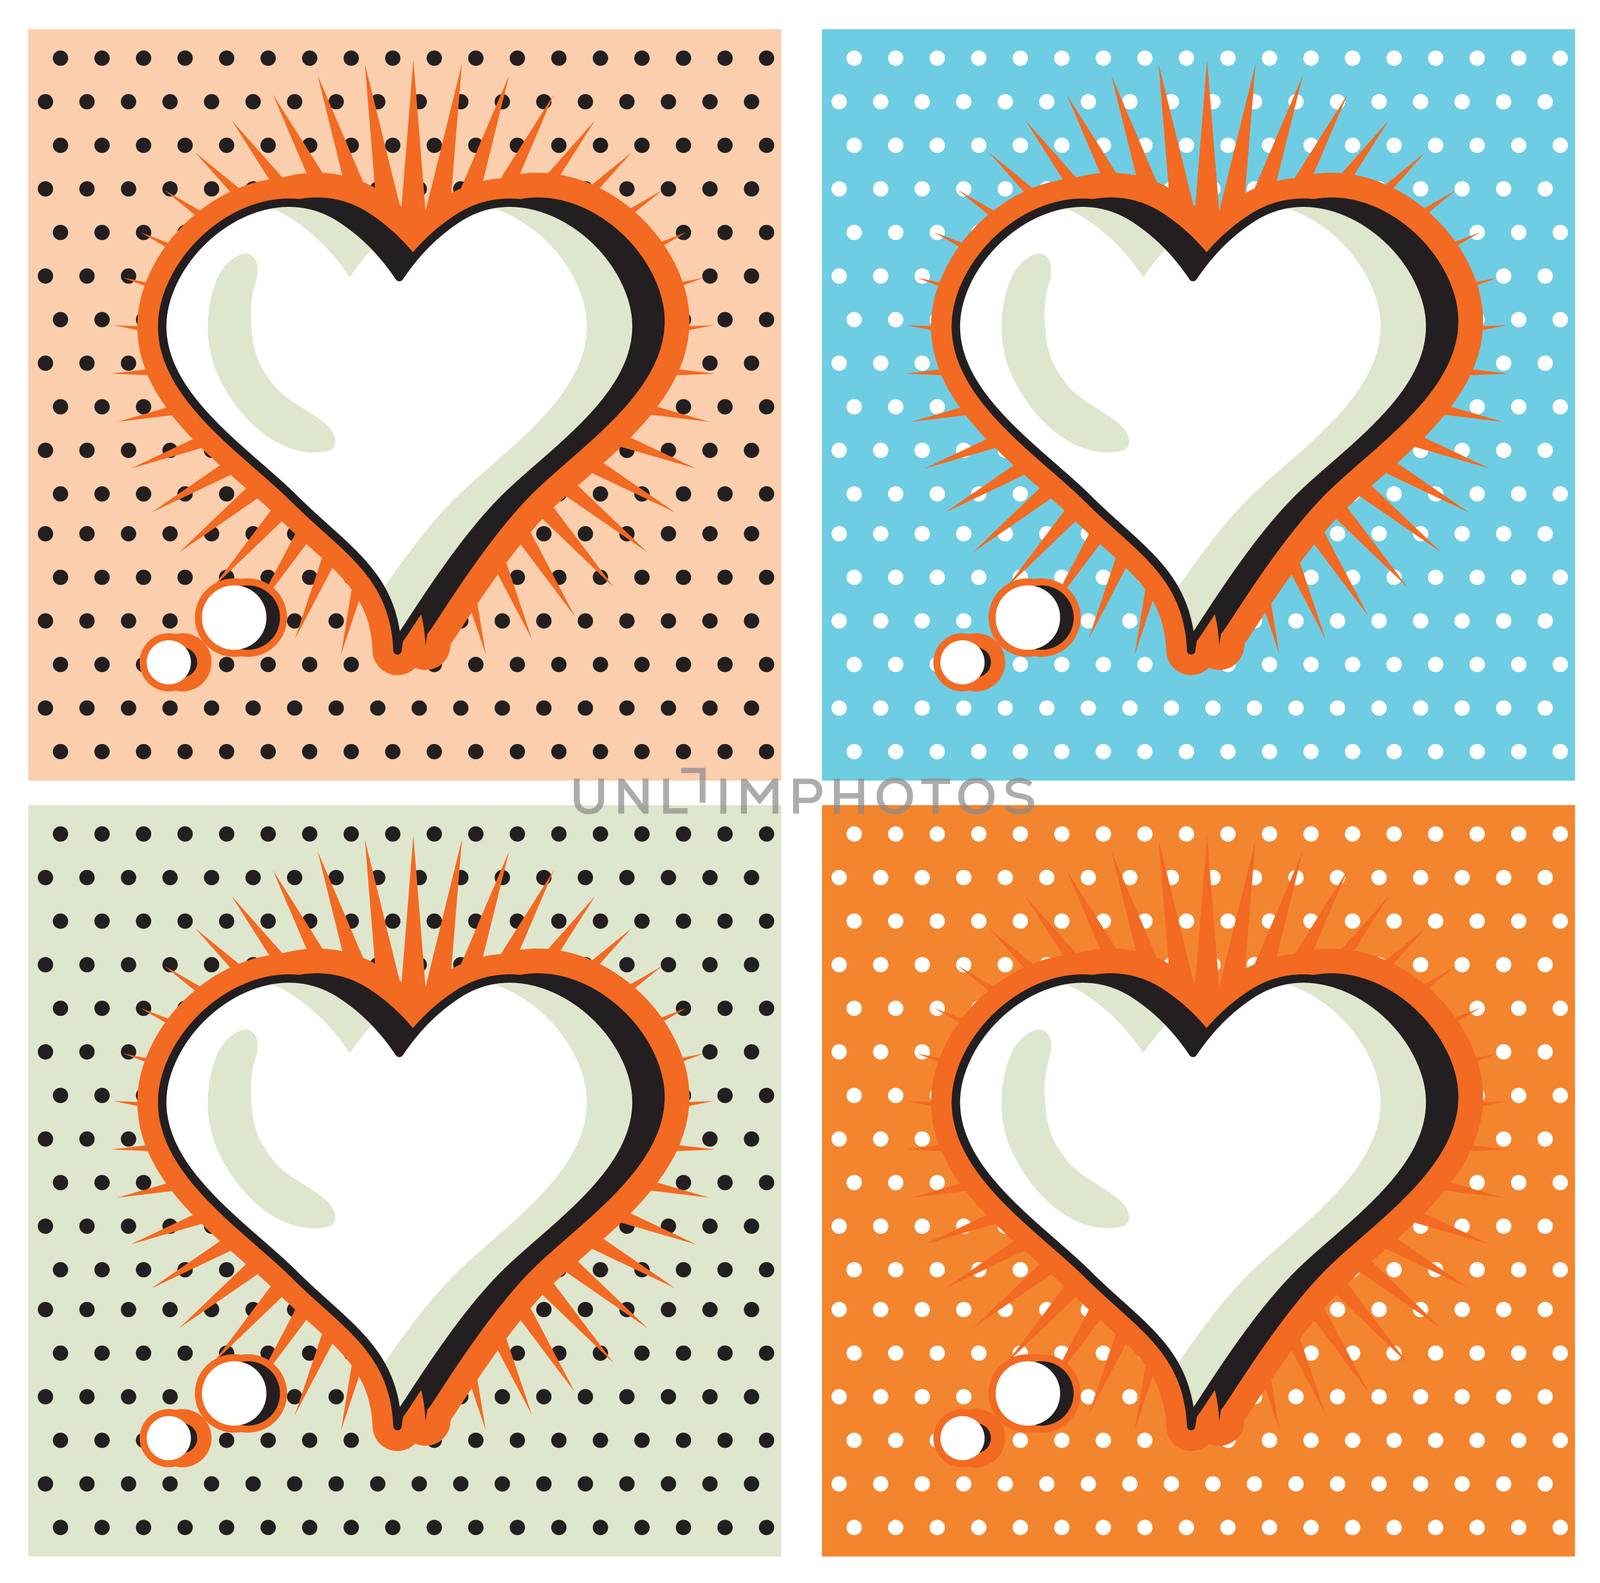 Speech Bubble Love Heart in Pop-Art Style cards set